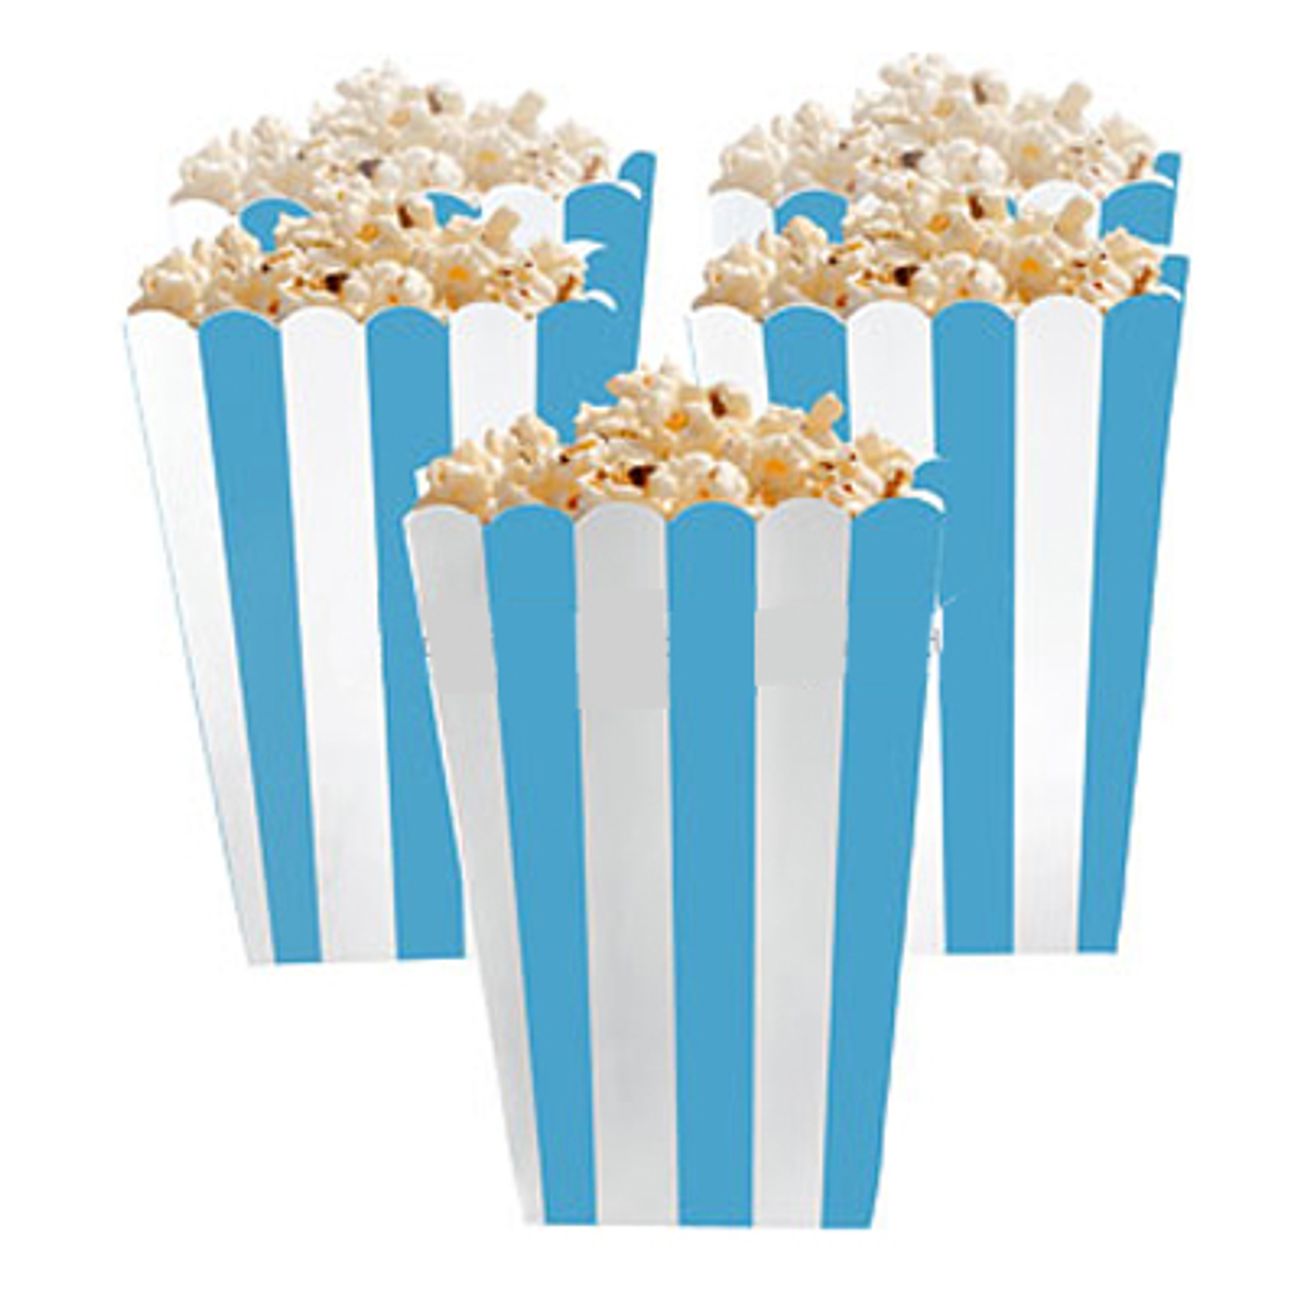 popcornbagare-bla-2